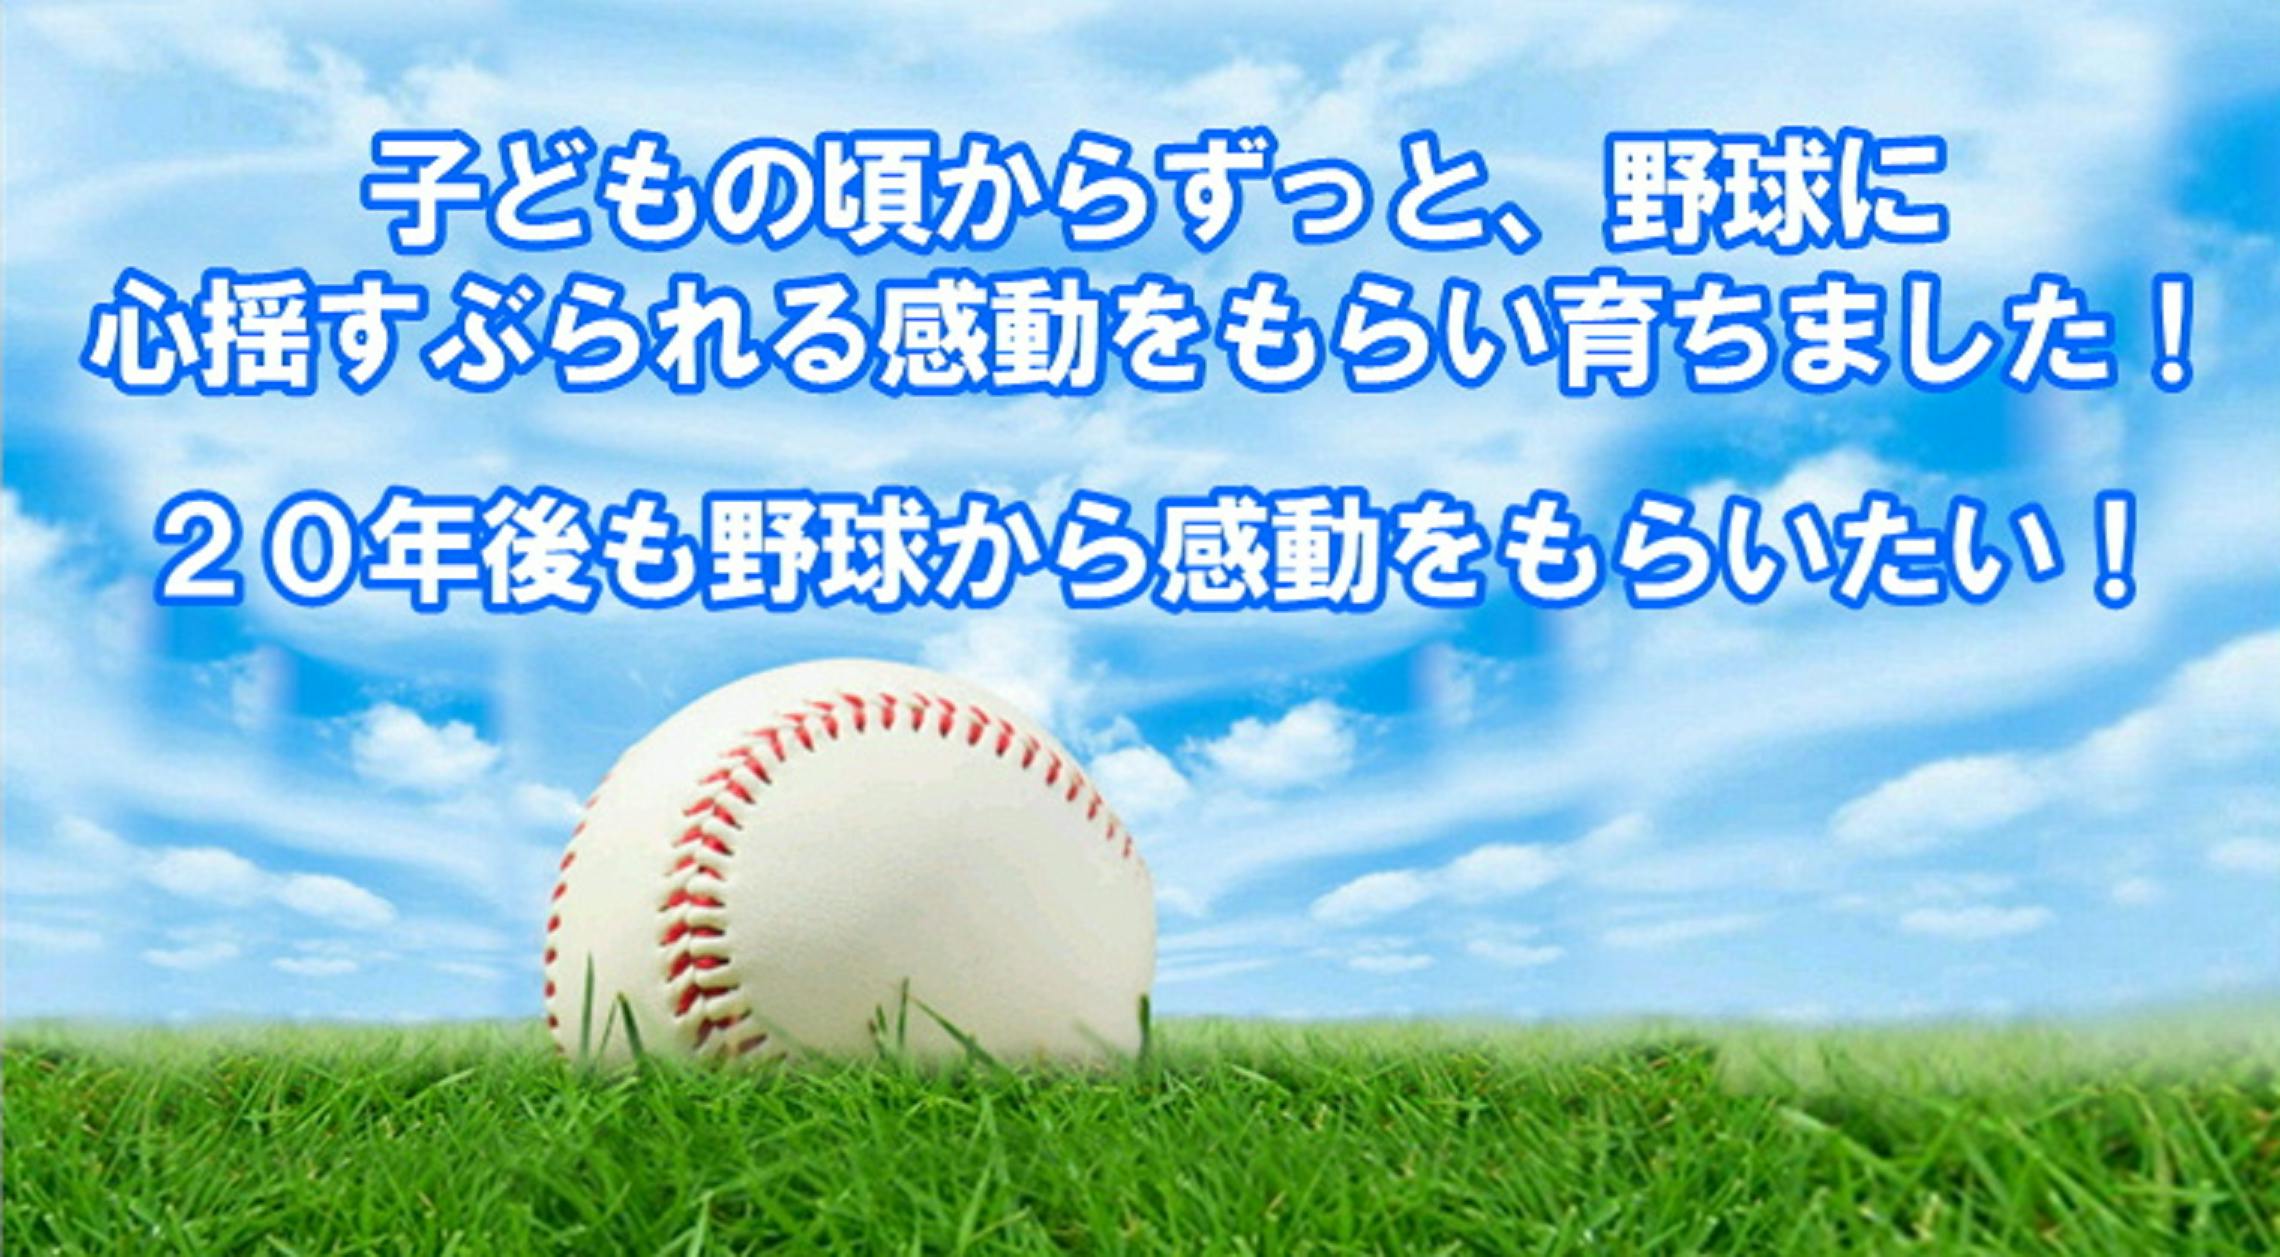 野球未来プロジェクト 日本で激減する少年野球プレーヤーを増やしたい Campfire キャンプファイヤー